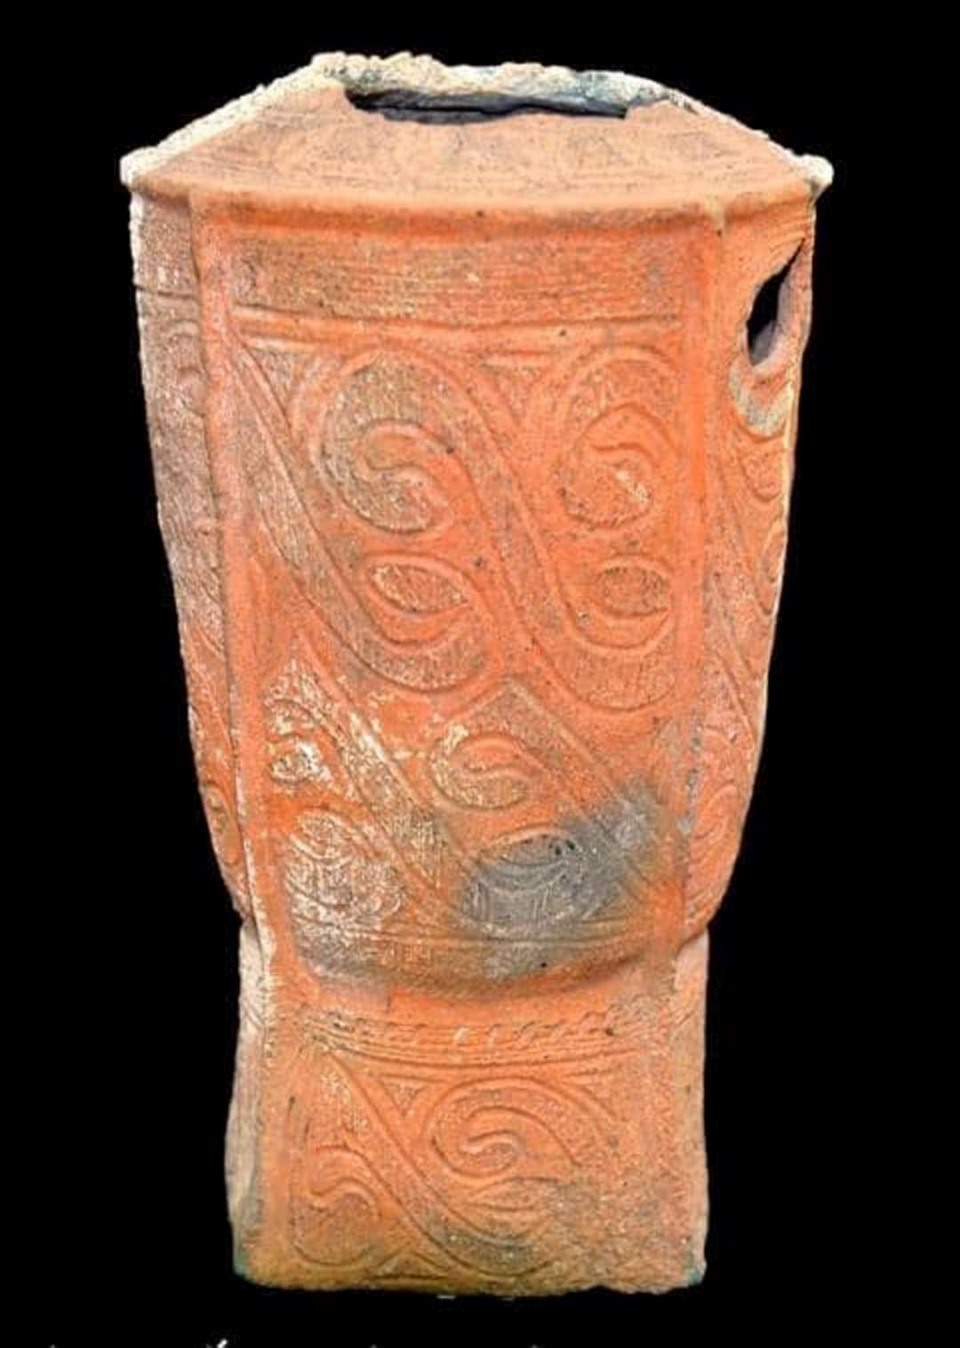 Bình gốm Đầu Rằm - một trong 8 bảo vật quốc gia hiện đang được lưu giữ, trưng bày tại Bảo tàng Quảng Ninh. Ảnh: Nguyễn Hùng